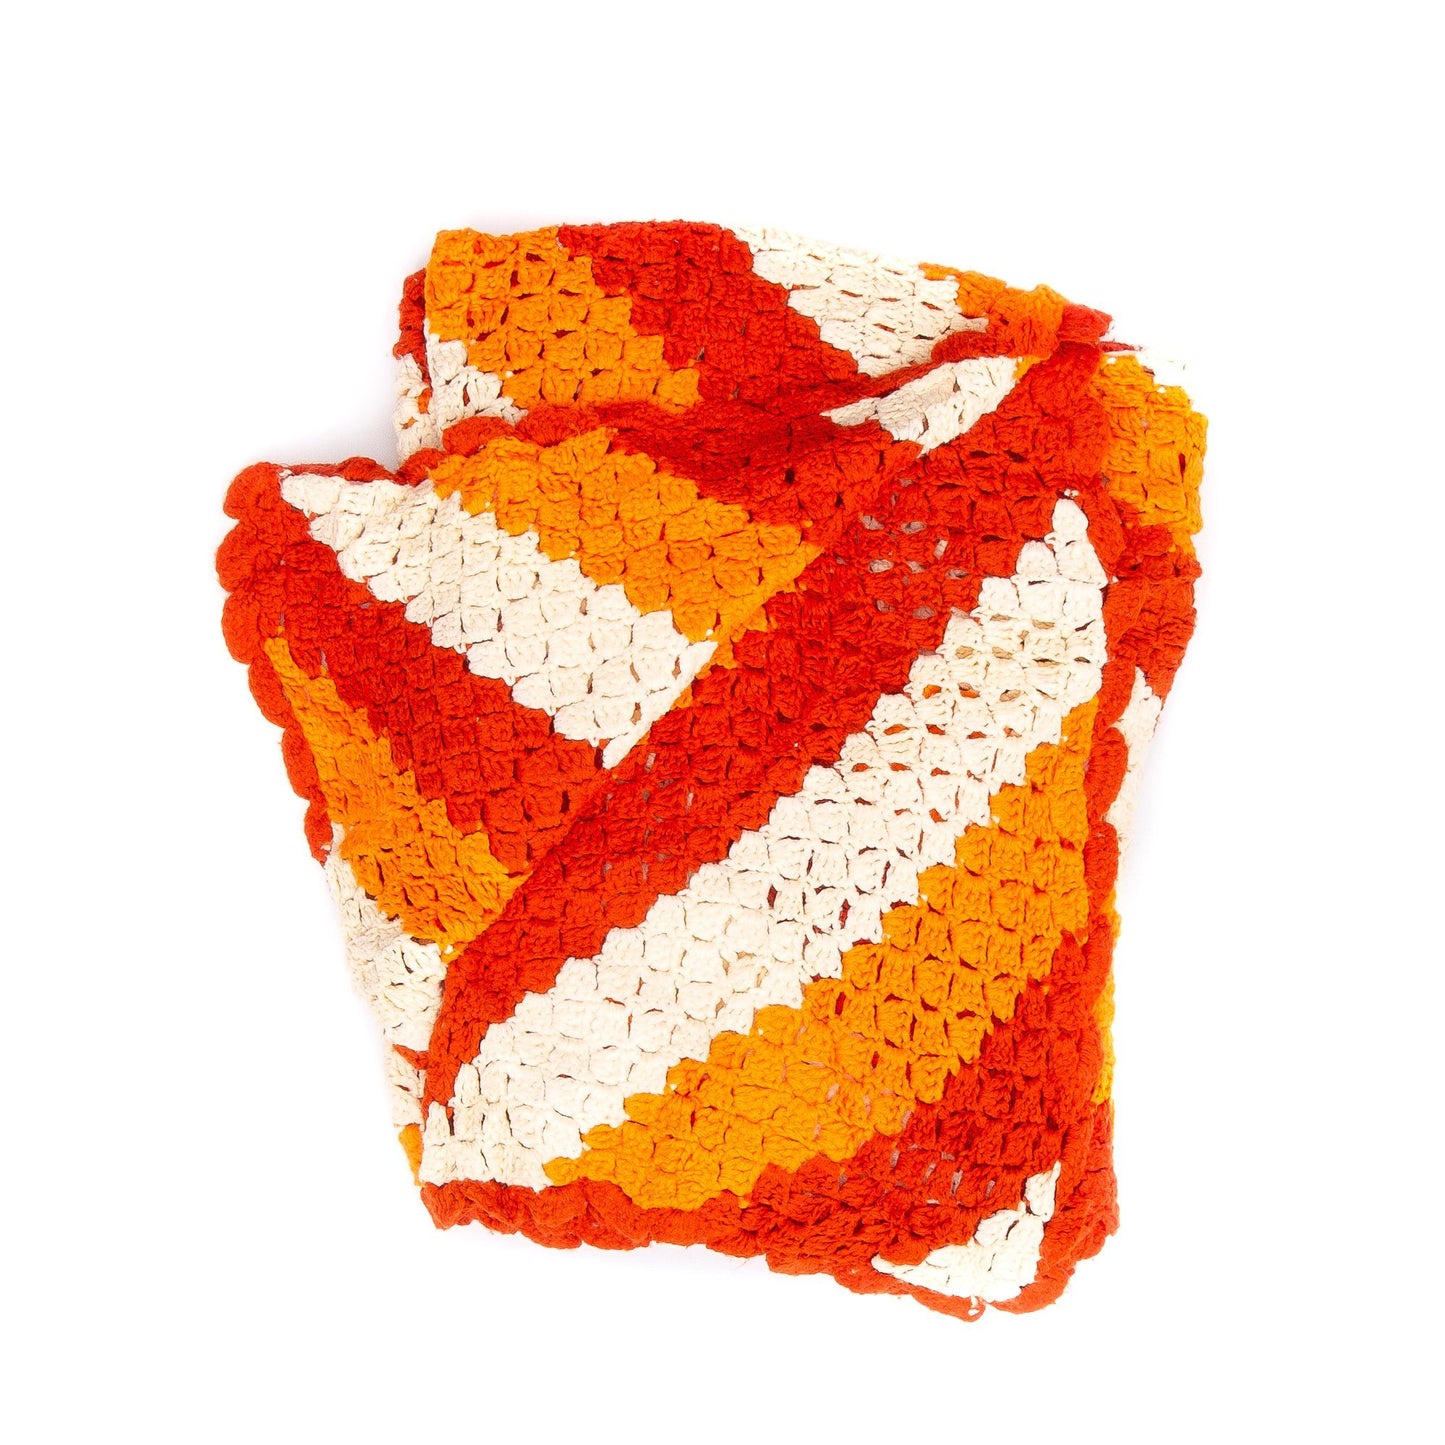 Preloved Crochet Throw Blanket Home Goods Goodfair 